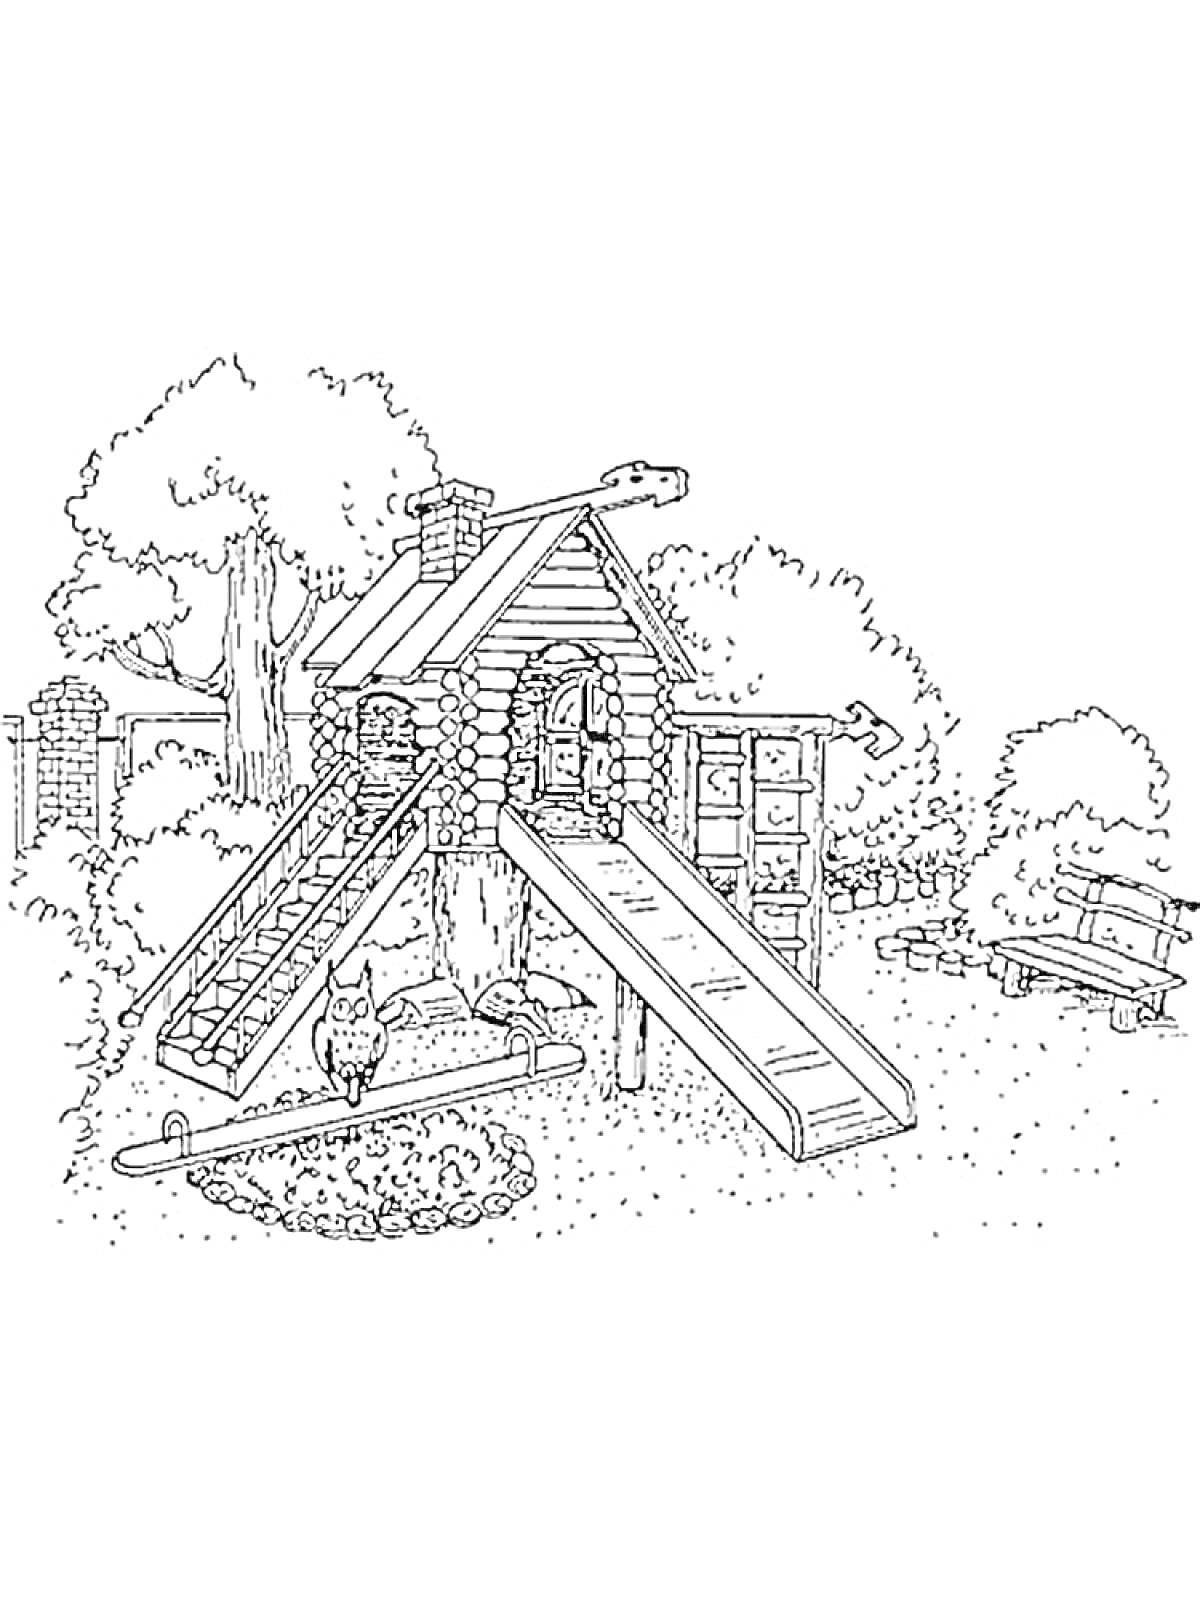 Раскраска Детская площадка с деревянным домиком, лестницей, горкой, песочницей и лавкой